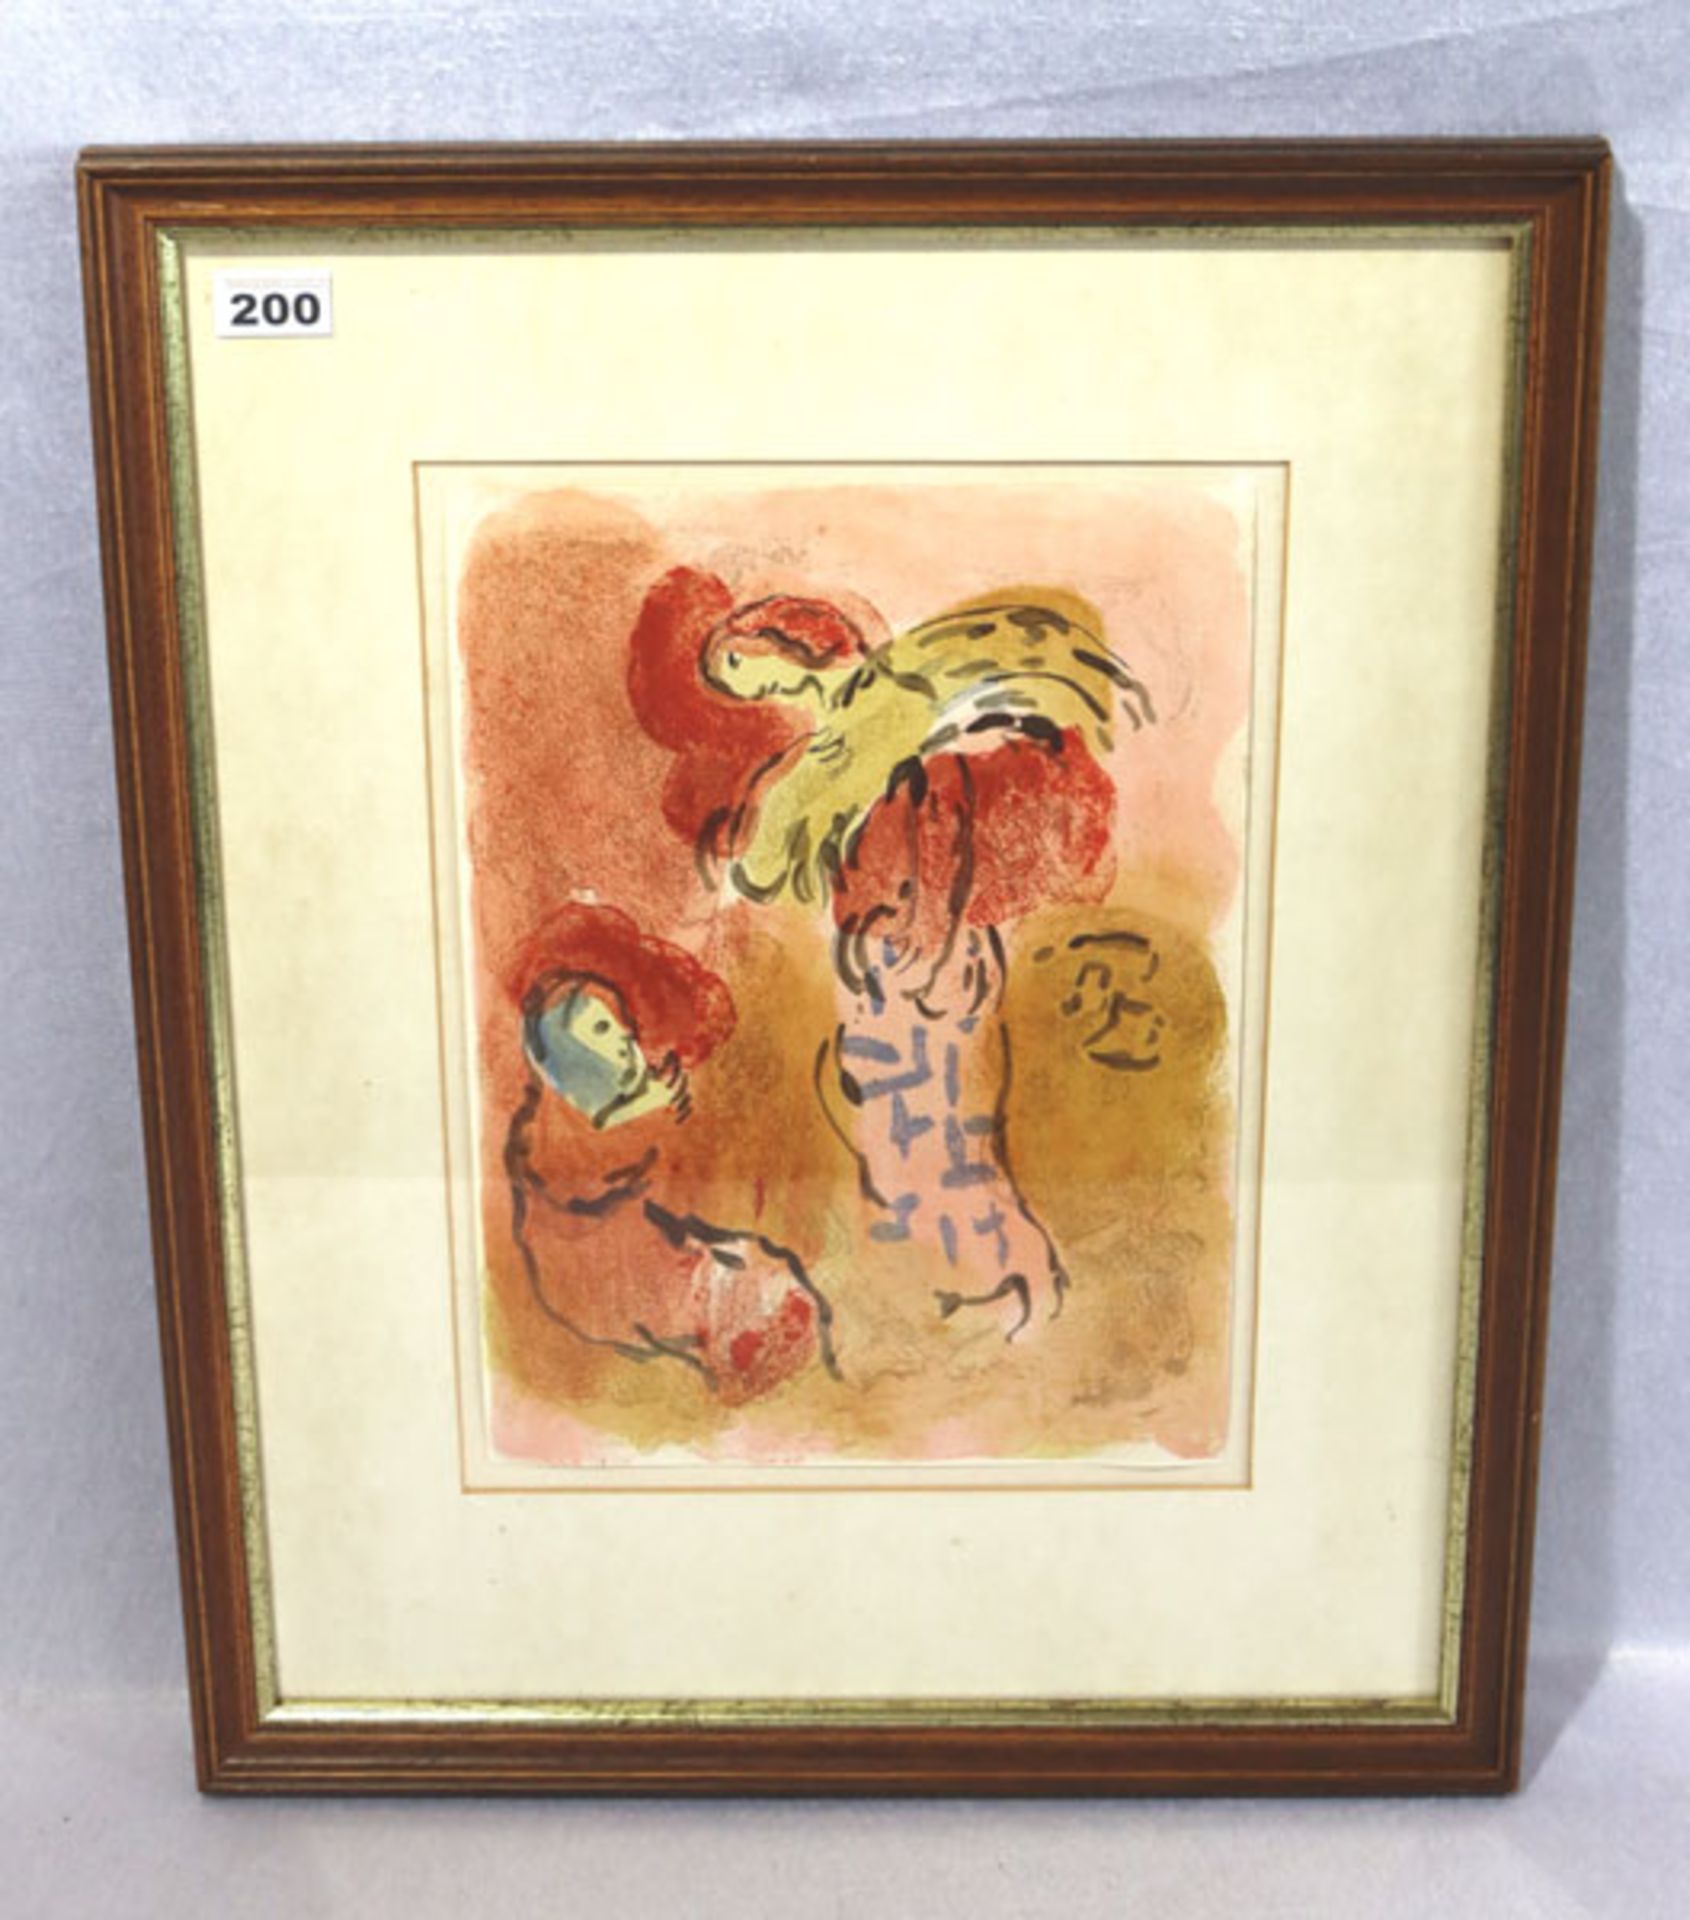 Original-Farblithographie 'Ährenleserin Ruth', nach Marc Chagall, 1960, mit Passepartout (leicht